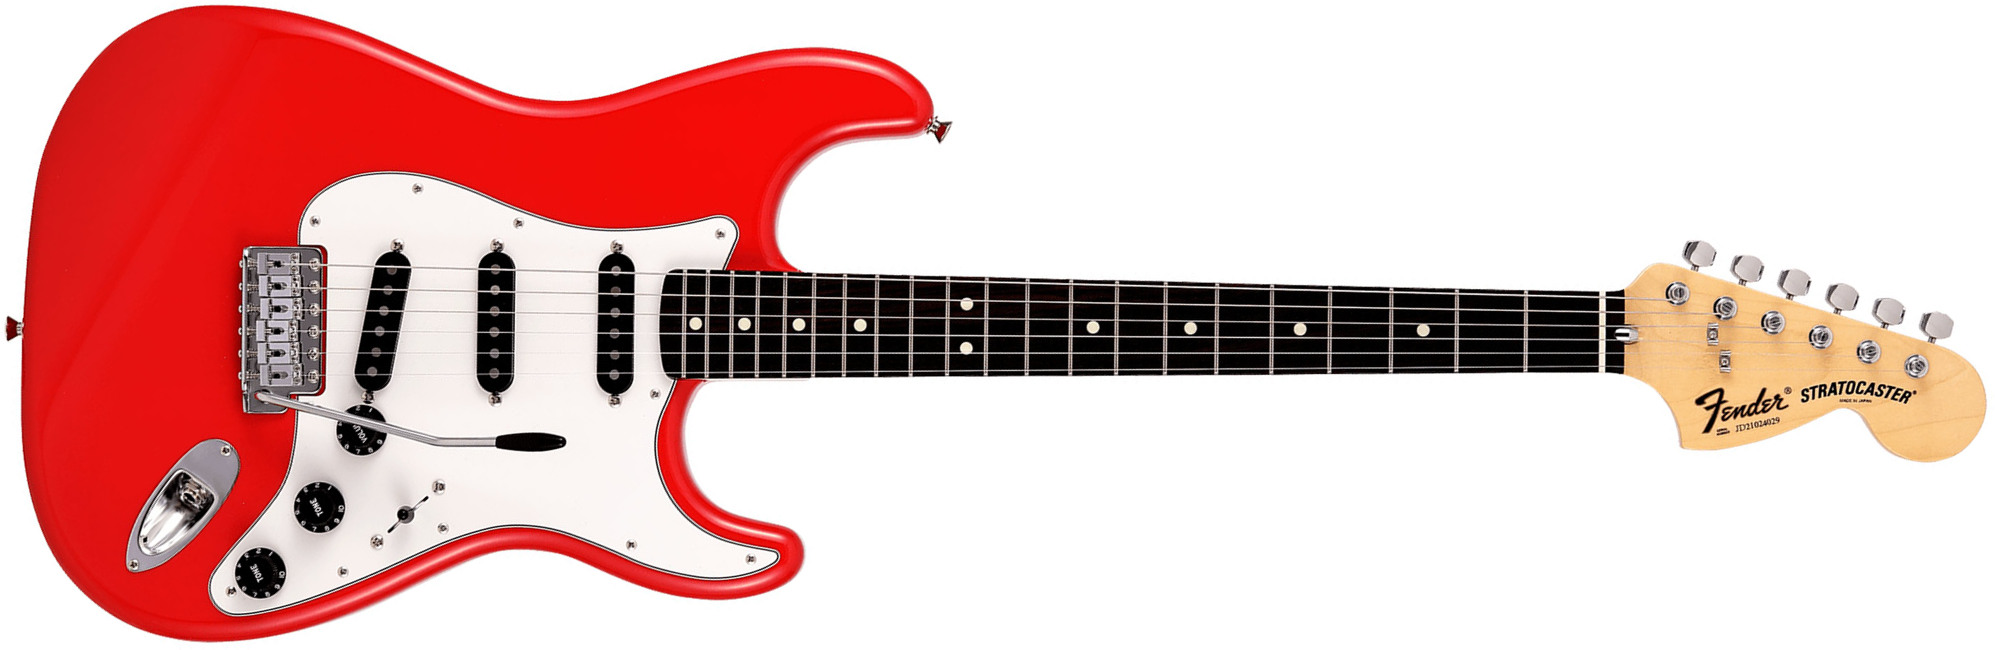 Fender Strat International Color Ltd Jap 3s Trem Rw - Morocco Red - Guitare Électrique Forme Str - Main picture